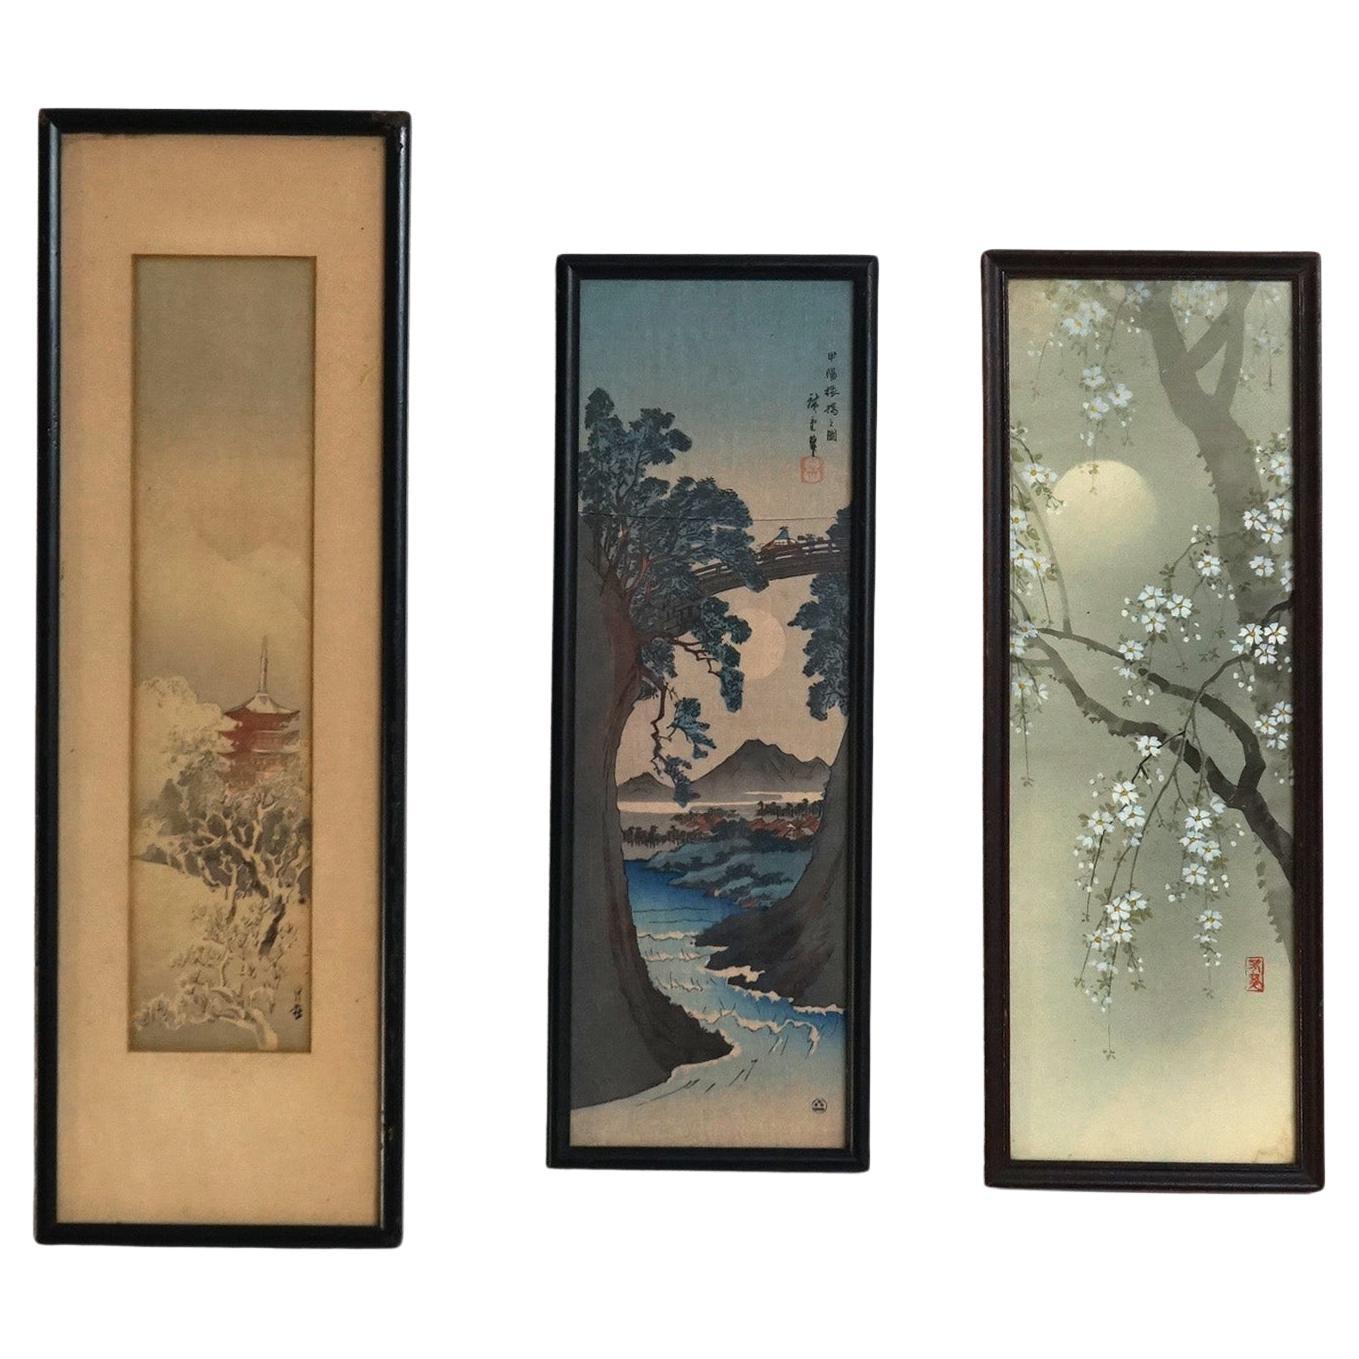 Drei antike japanische Holzschnitt-Landschaftsdrucke mit Holzschnitt, um 1920